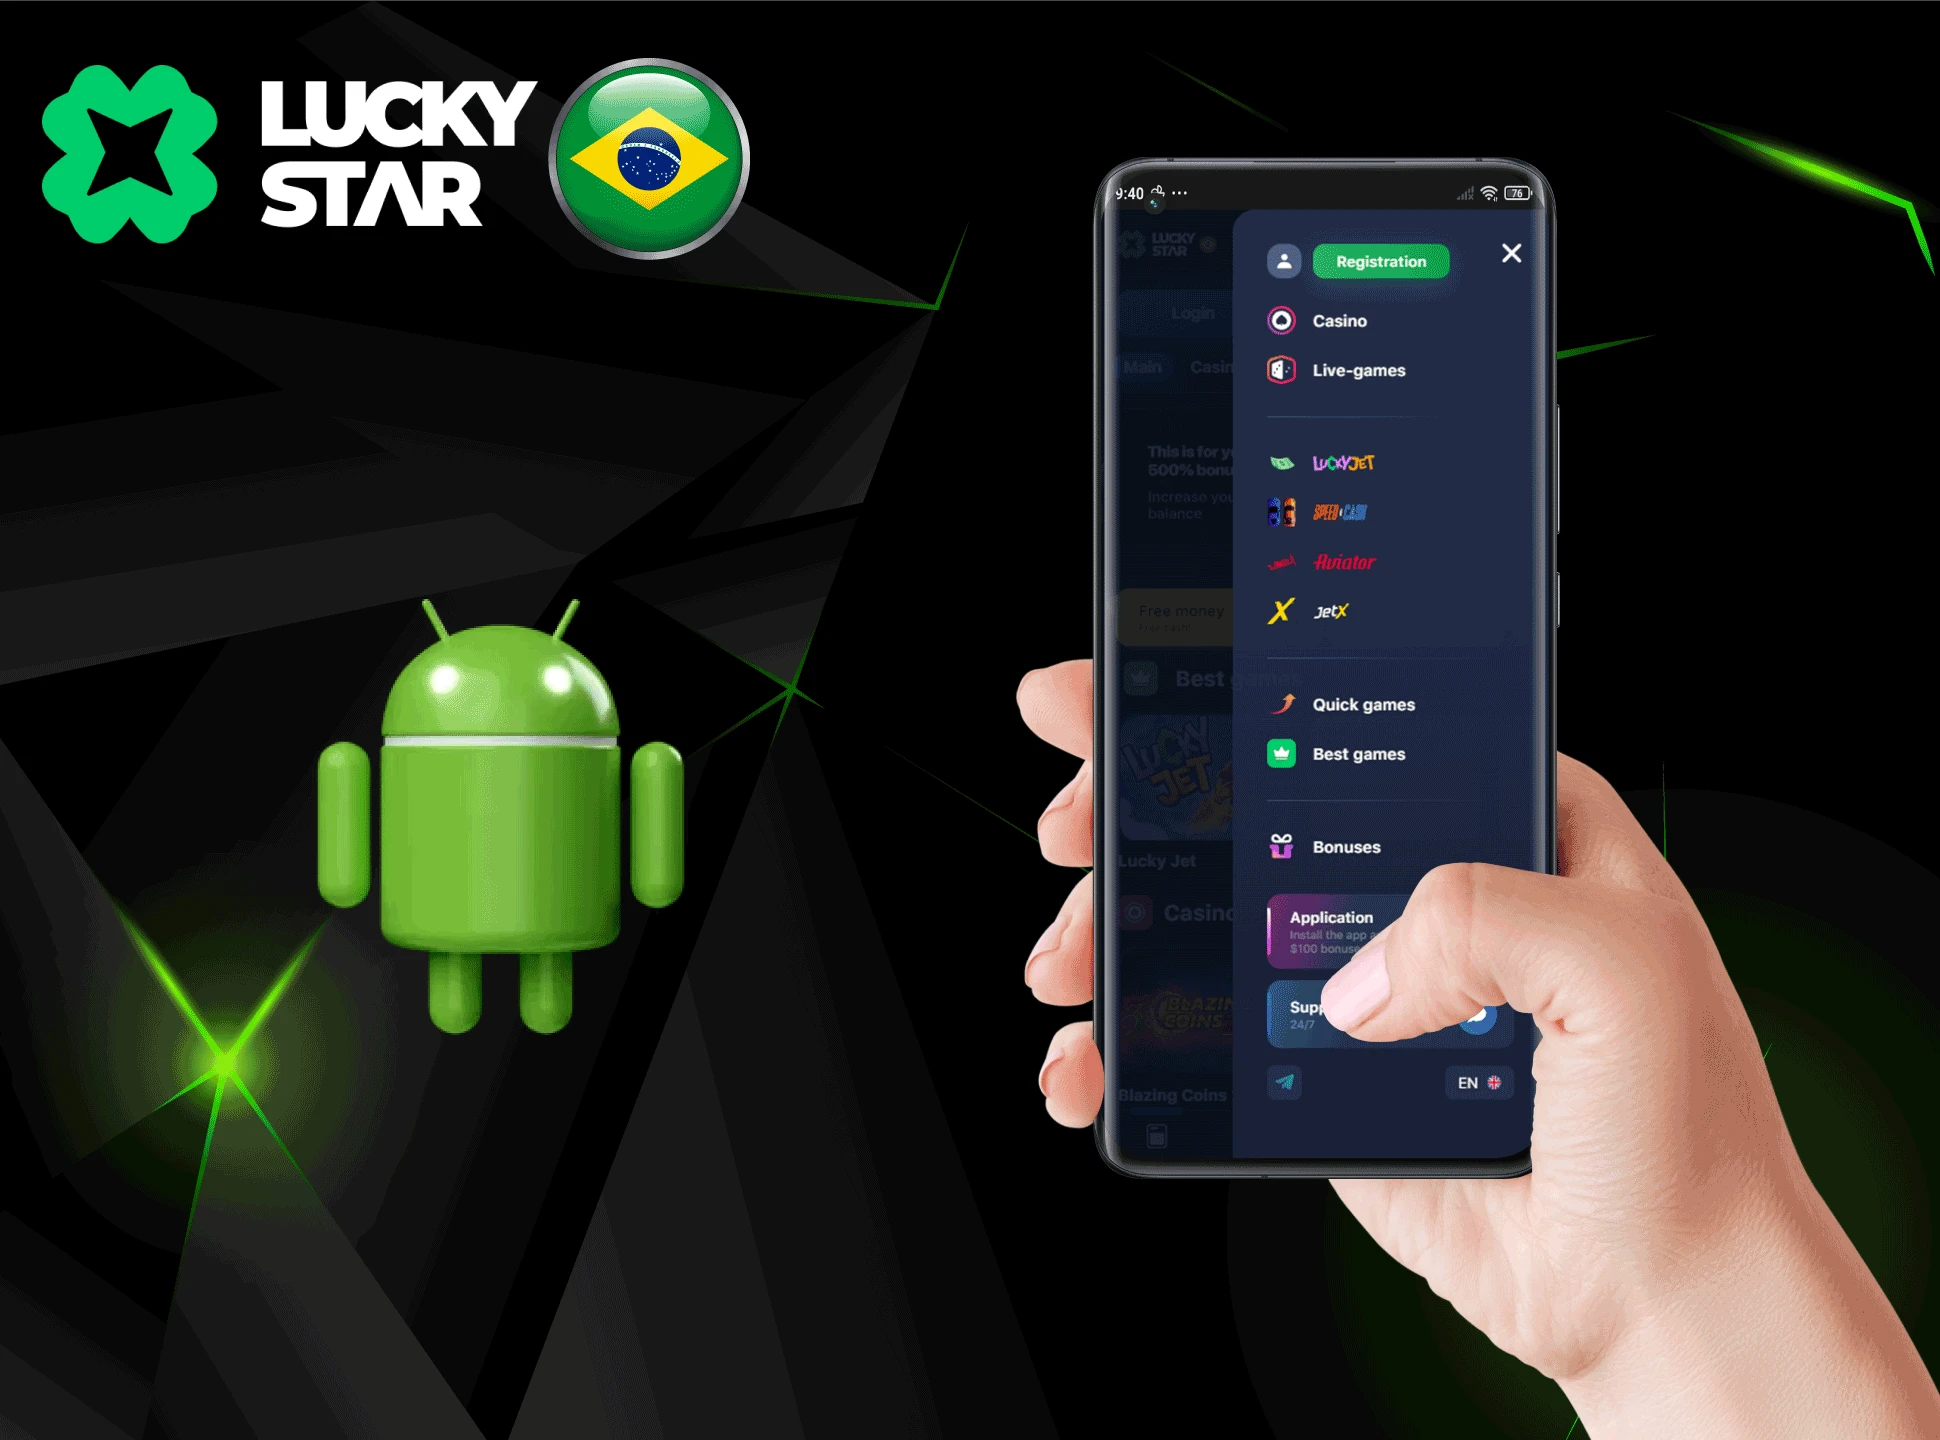 Instalar a aplicação web da casa de apostas na plataforma Android